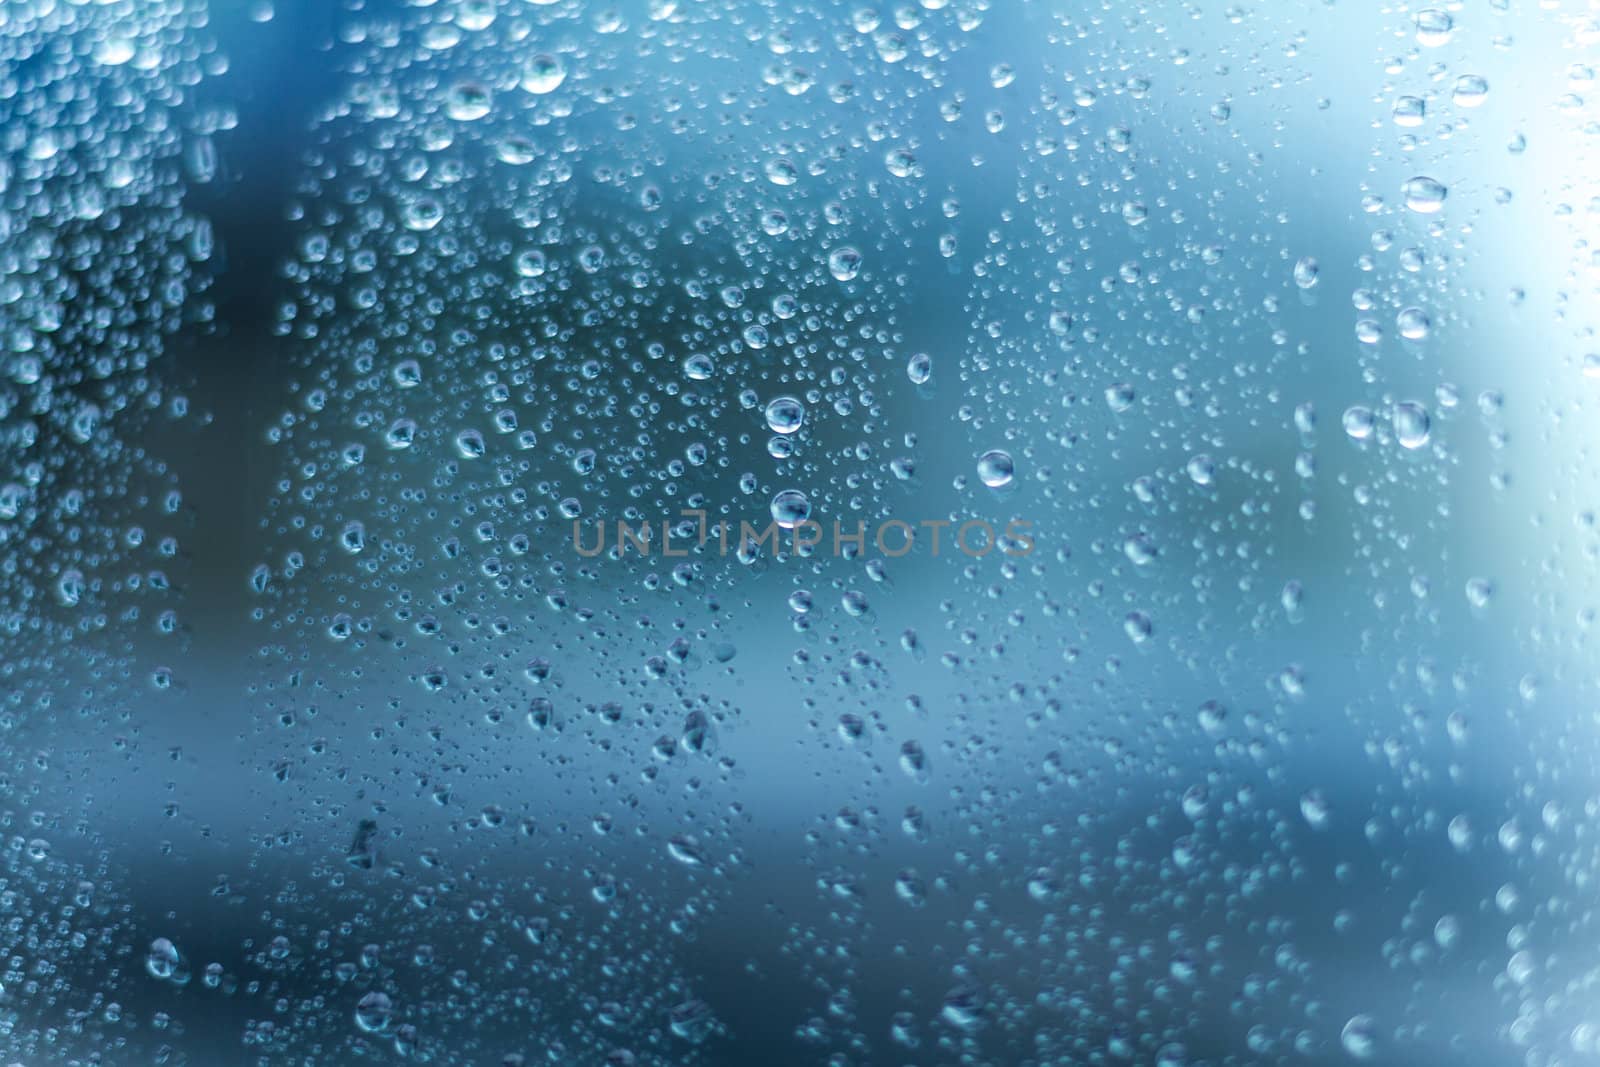 Wet Window Background Texture by britebluespot